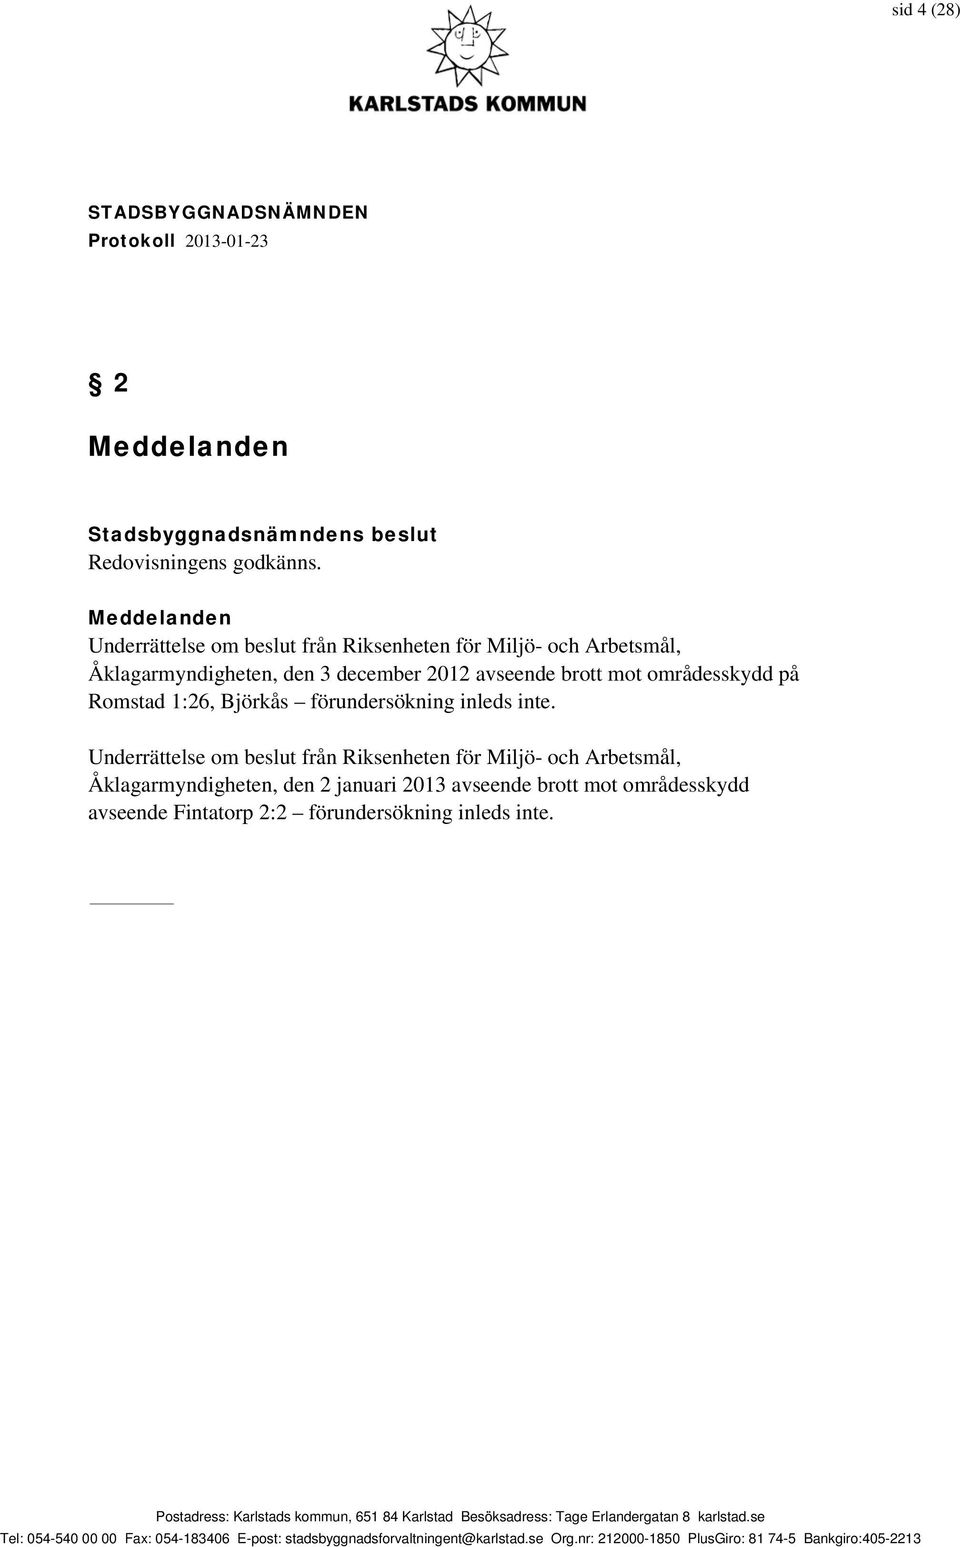 december 2012 avseende brott mot områdesskydd på Romstad 1:26, Björkås förundersökning inleds inte.